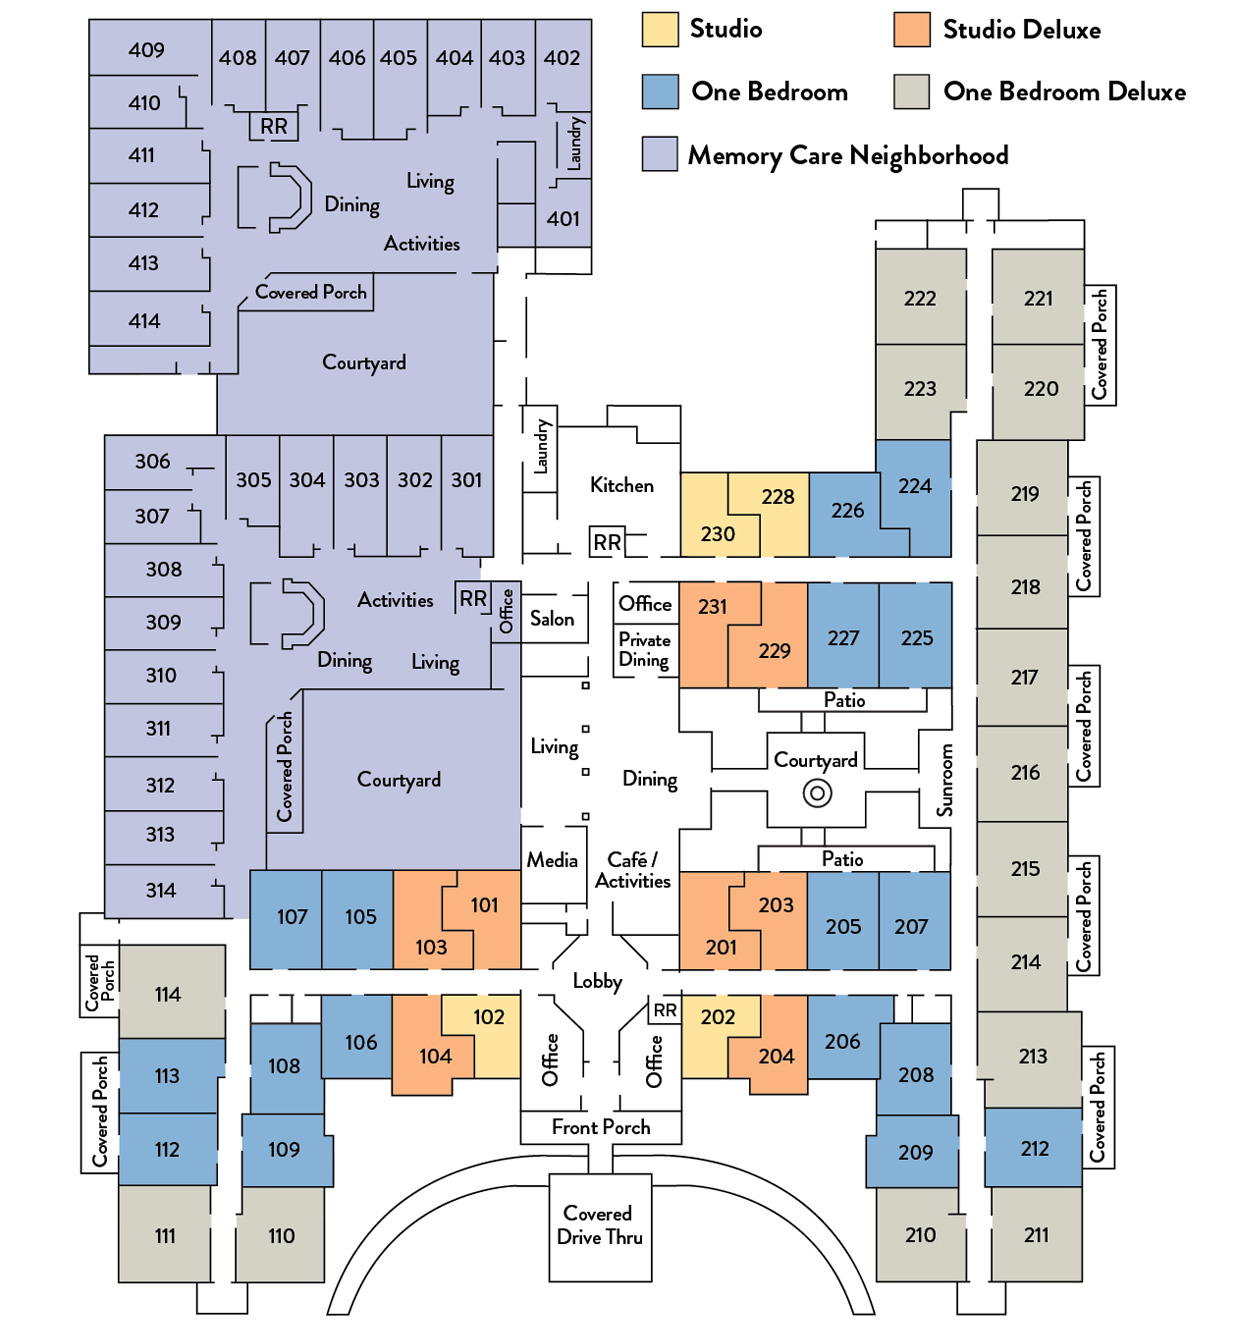 Community Floor Plan Overview